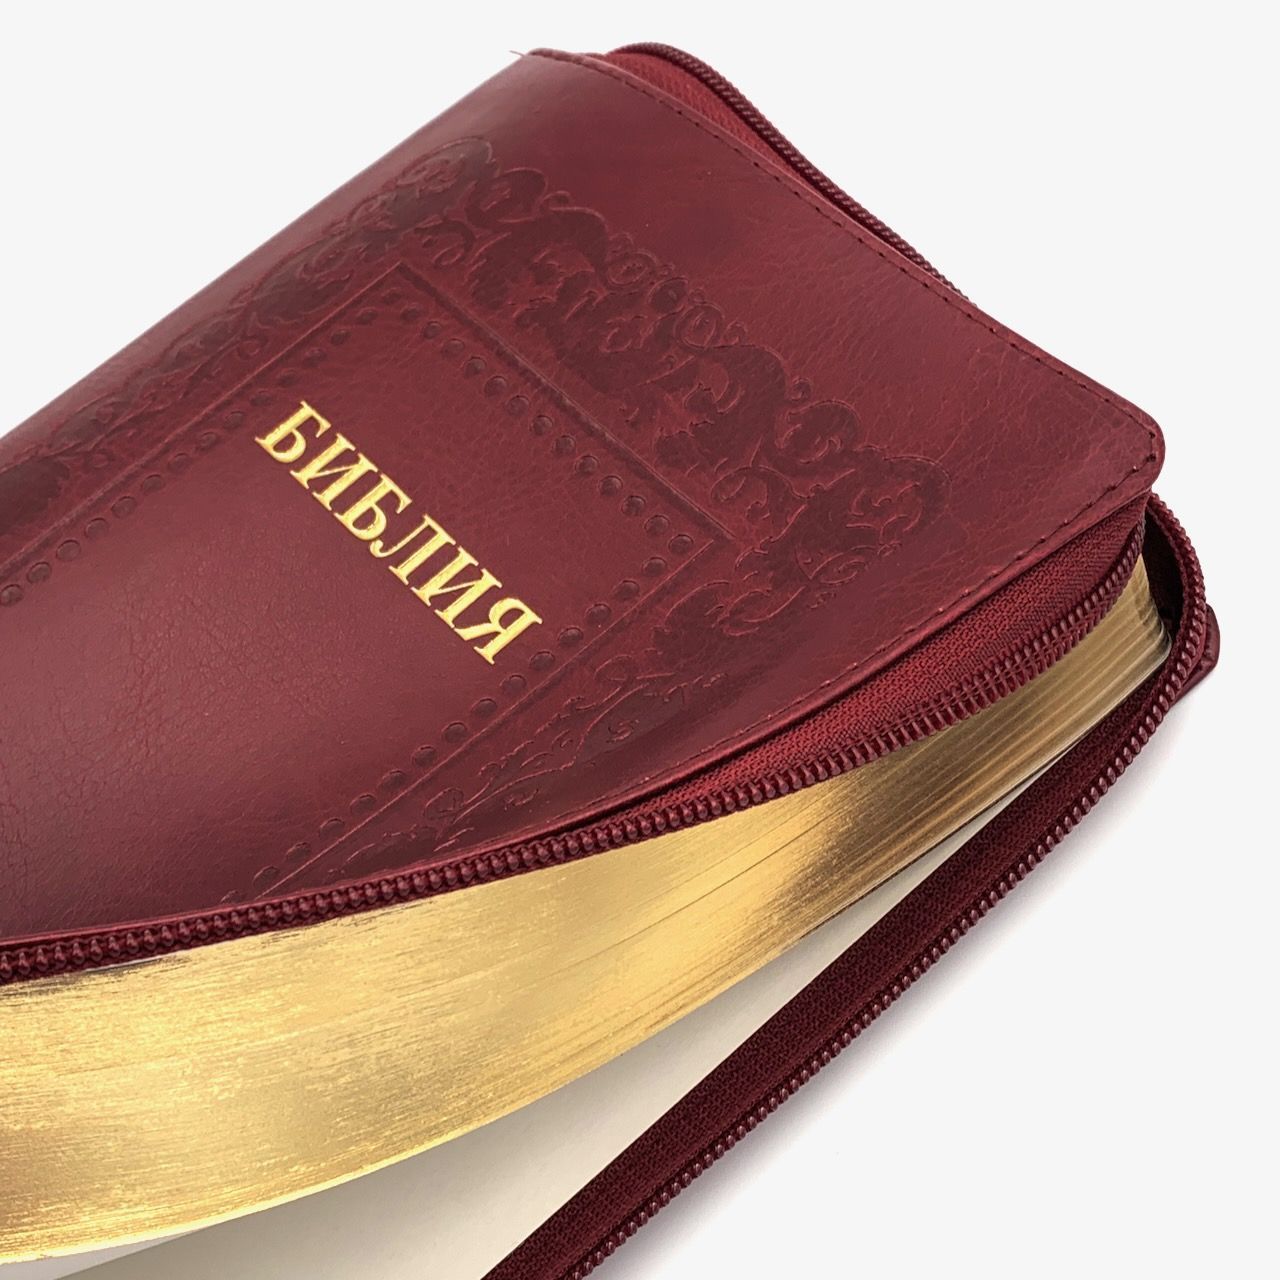 Библия 055z код 23055-9 дизайн "термо рамка барокко", переплет из искусственной кожи на молнии, цвет бордо, средний формат, 143*220 мм